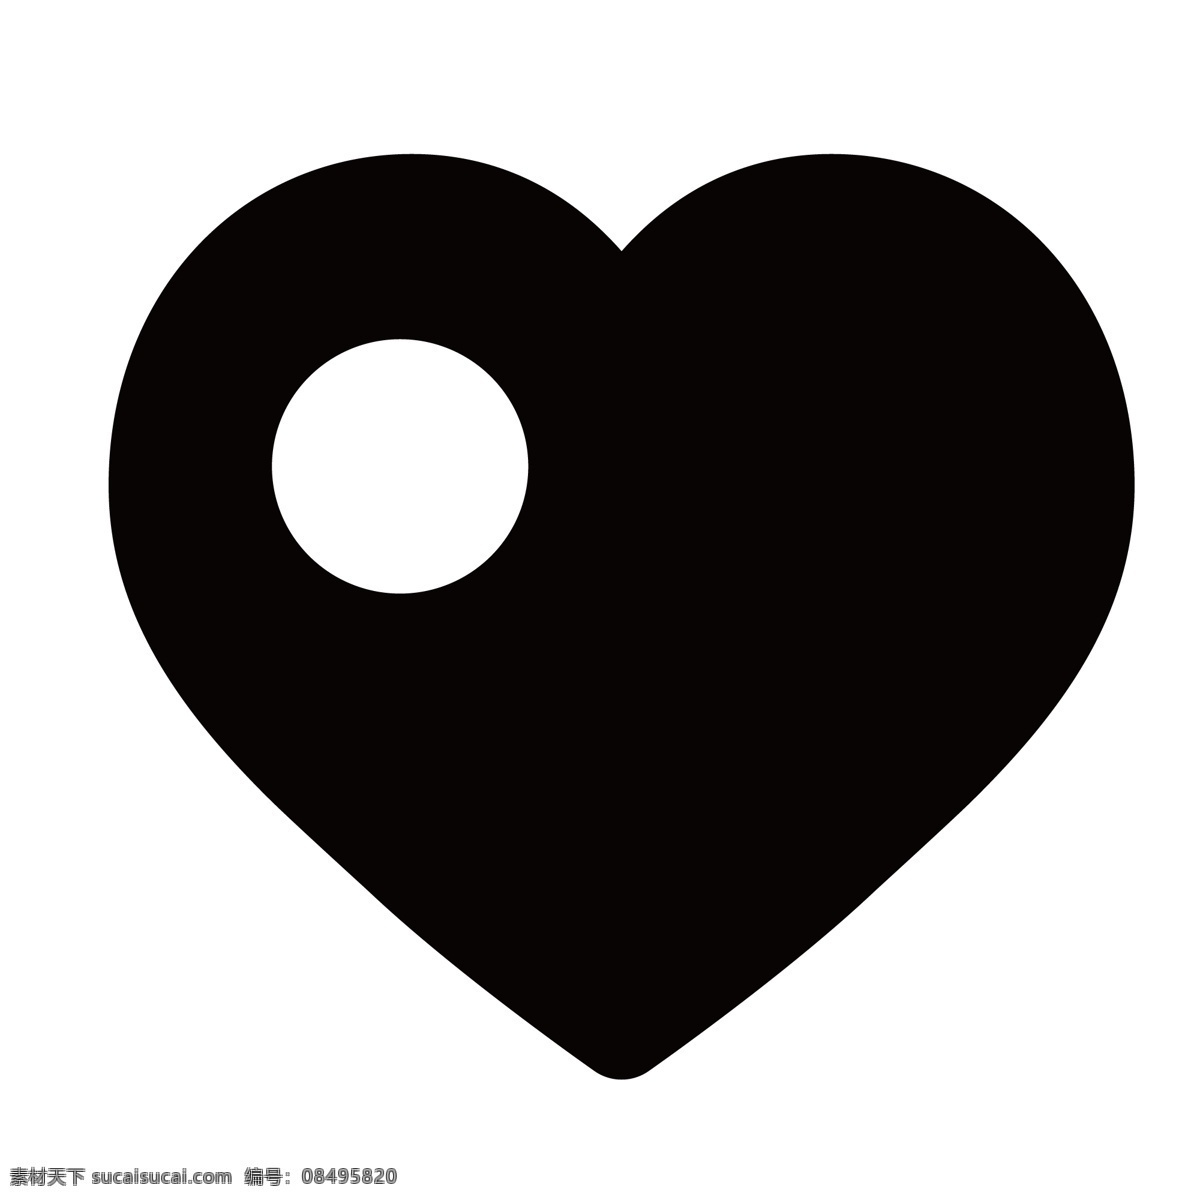 一个 卡通 爱心 心形 形状 黑色图标 电子图标 网络图标 图标设计 科学图标